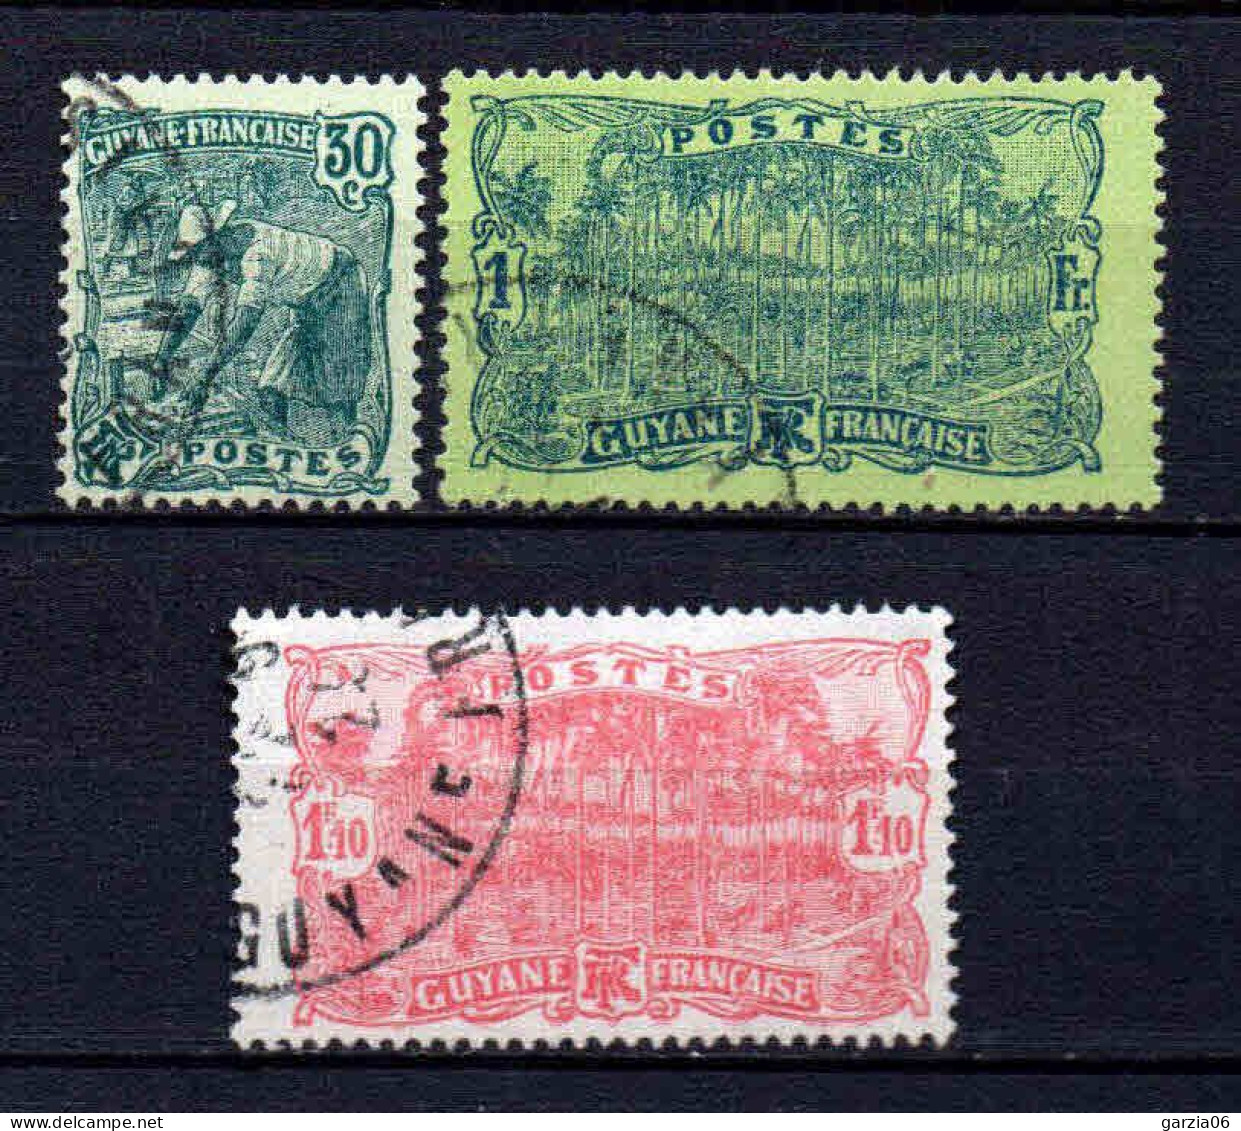 Guyane - 1928 - Tb Antérieur Nouvelles Valeurs   -  N° 106 à 108  - Oblit - Used - Usati